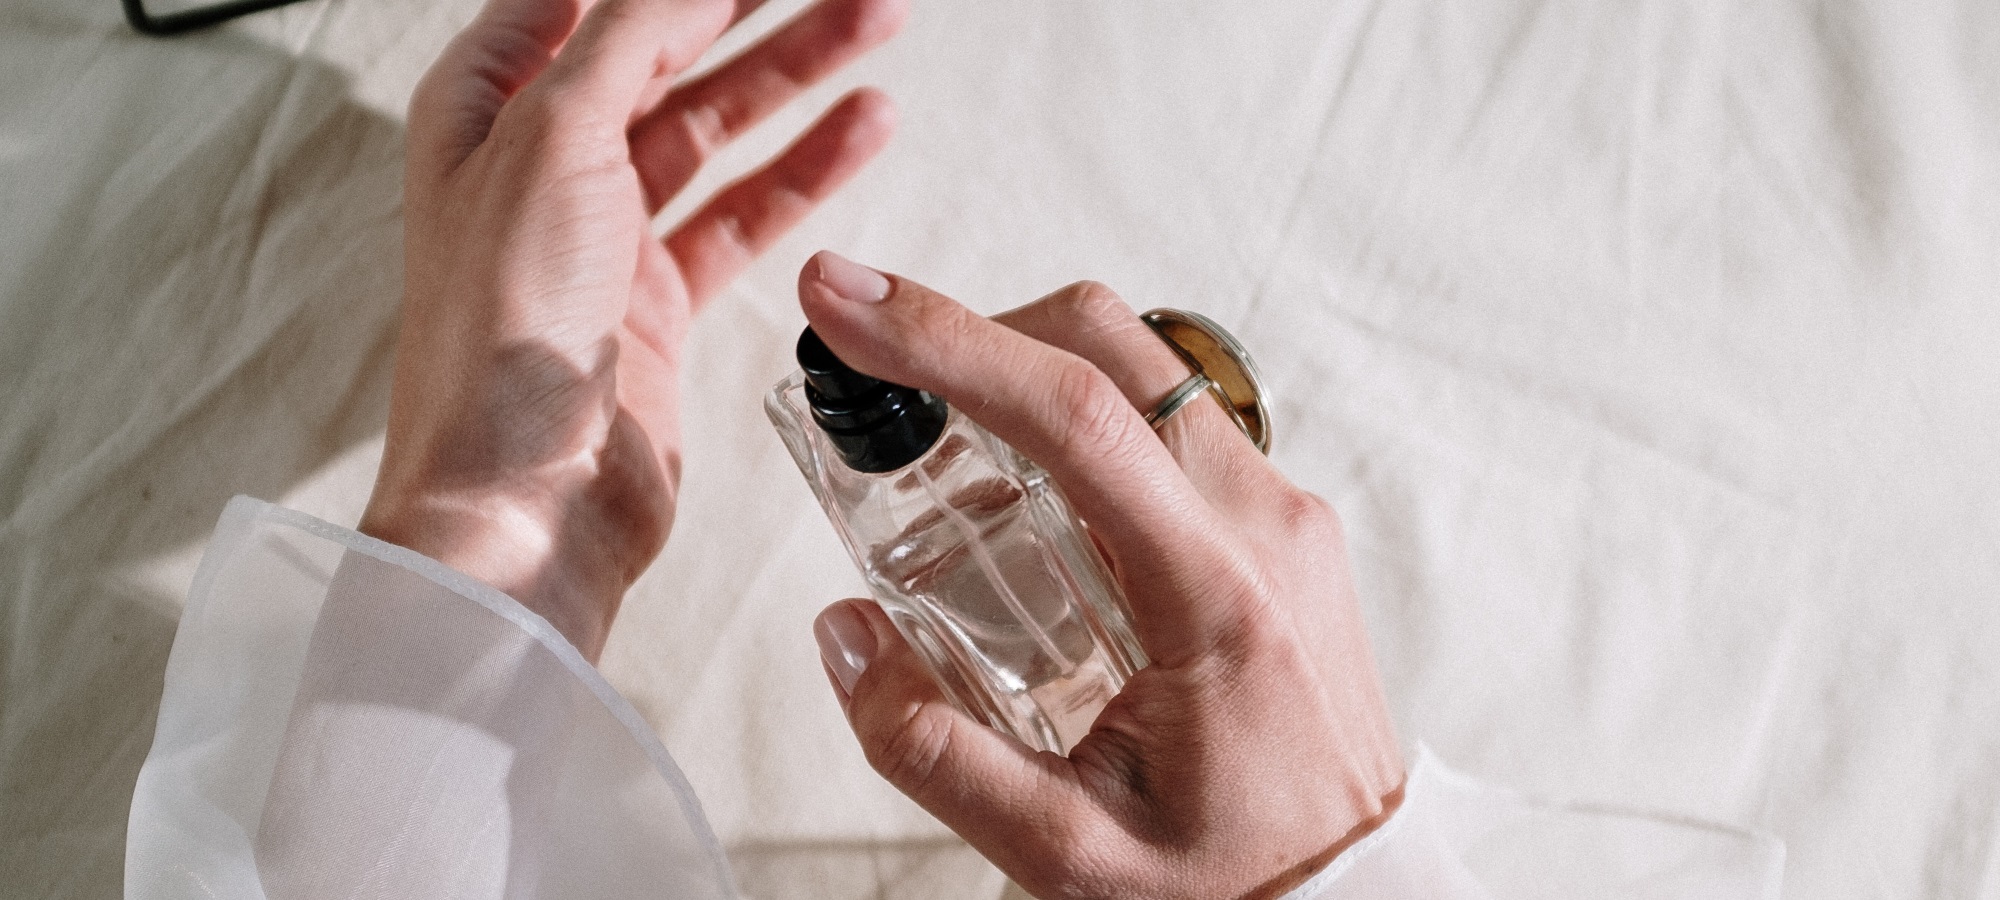 5 tips para identificar si un perfume es verdadero o falso, según expertos